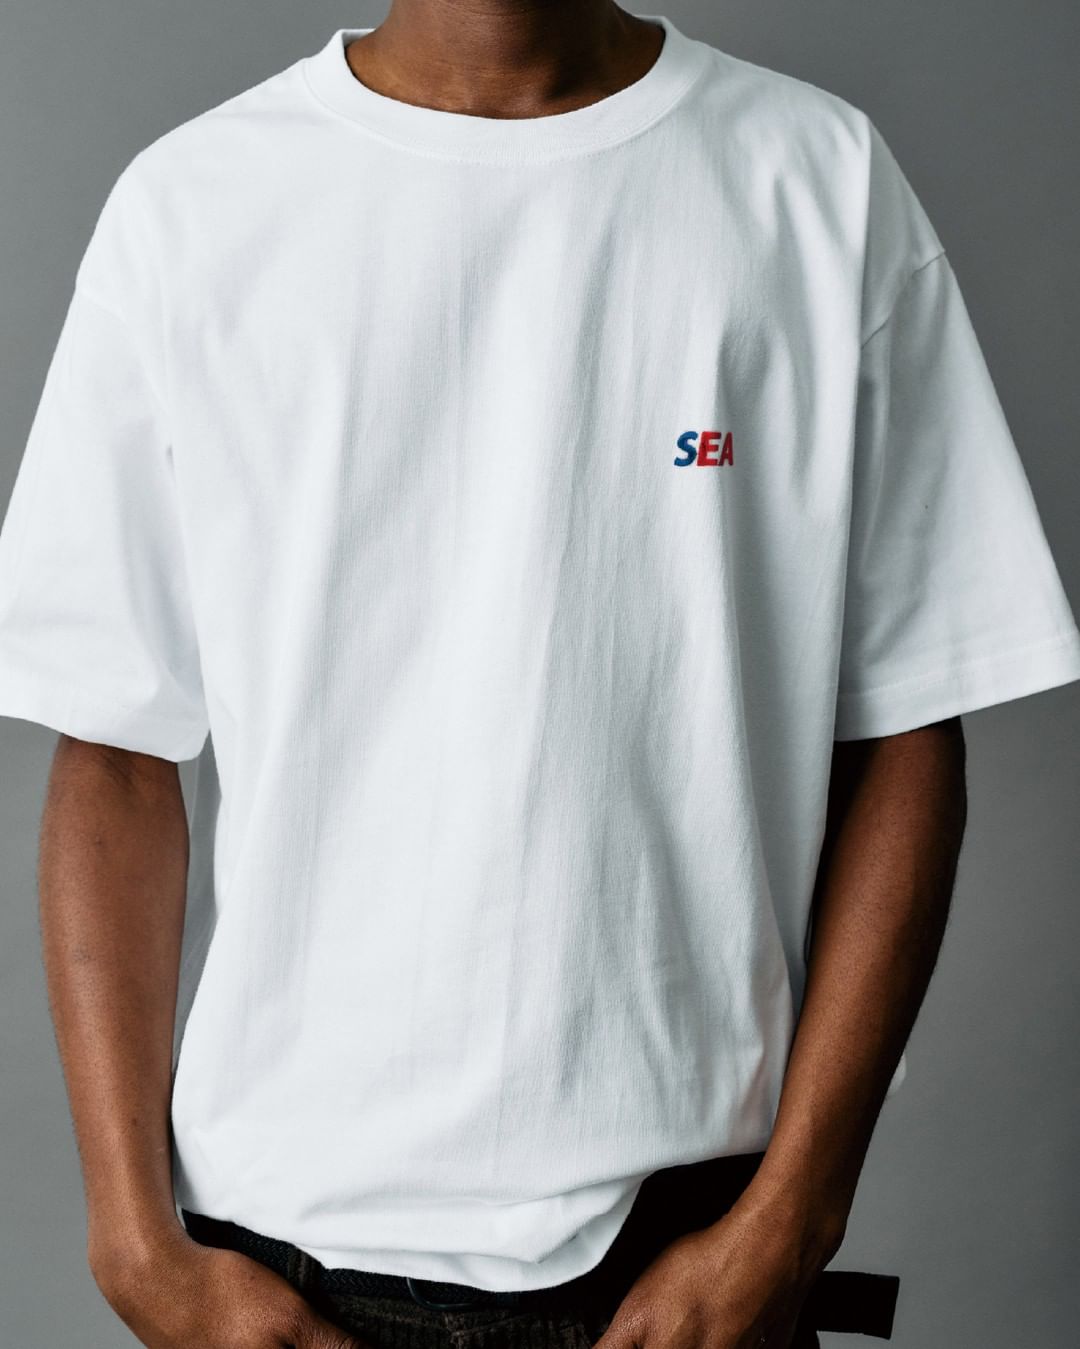 台湾地震復興支援としてWIND AND SEAがチャリティーTシャツを2024年 4/23まで受注販売 (ウィンダンシー Taiwan Earthquake Charity T-shirt)